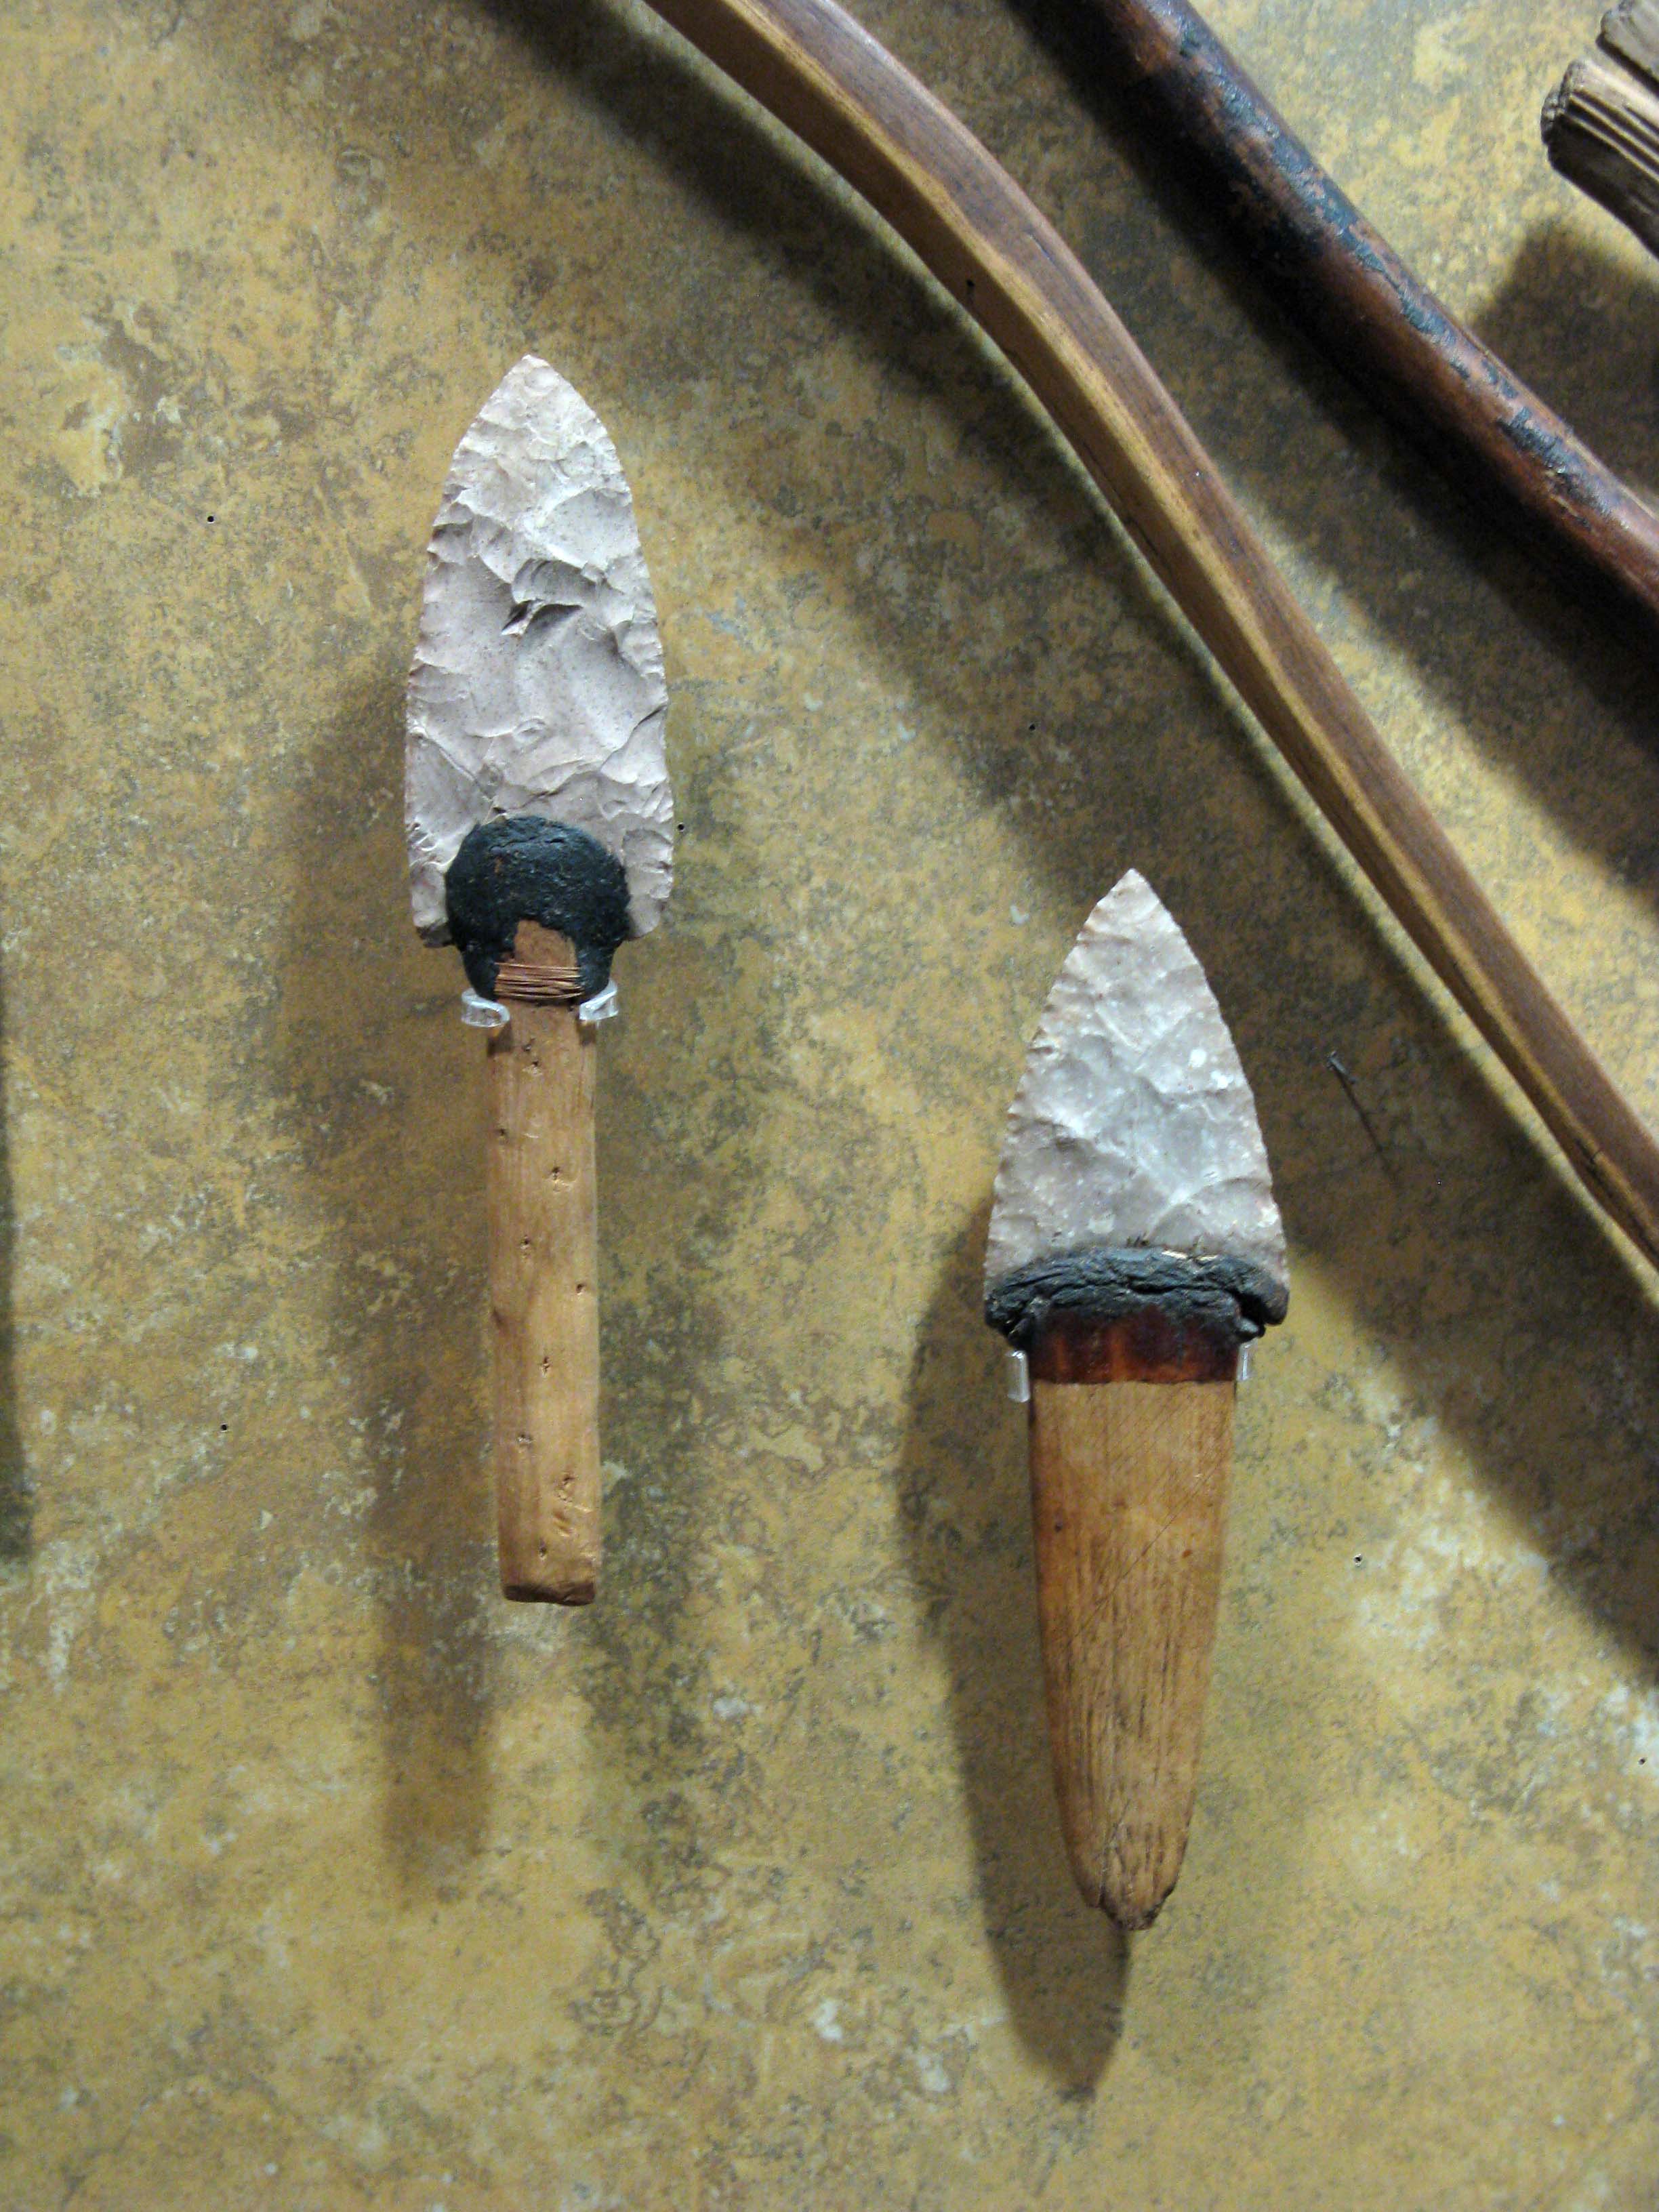 Le mastic est une pâte qui permet de faire adhérer des objets entre eux. Ici, il sert à relier la poignée du couteau à la lame. © Travis S., CC BY-NC 2.0, FlickR